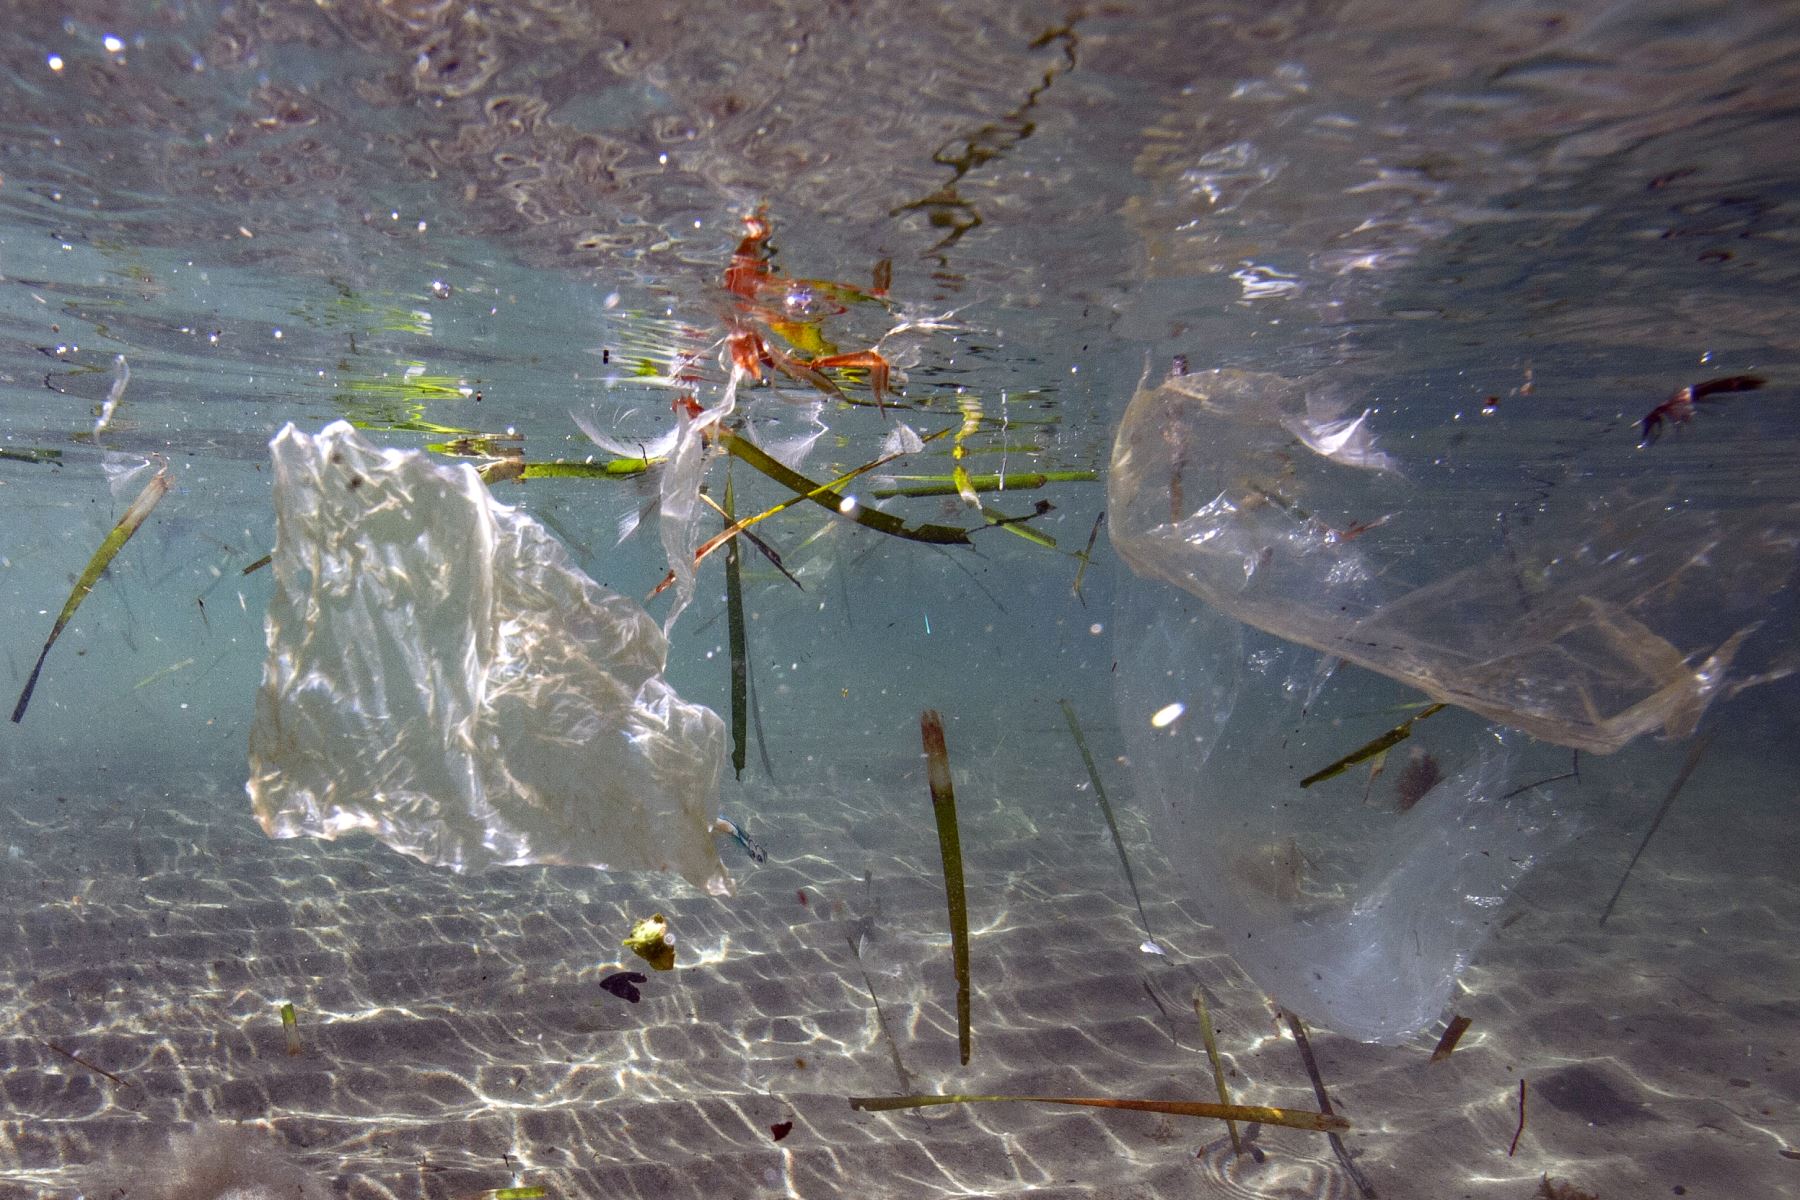 08/06/2019   Residuos de plástico que flotan en el mar en Marsella. Francia es el primer productor de residuos plásticos, de los cuales 10.000 toneladas terminan en el mar Mediterráneo, según una encuesta realizada por WWF.